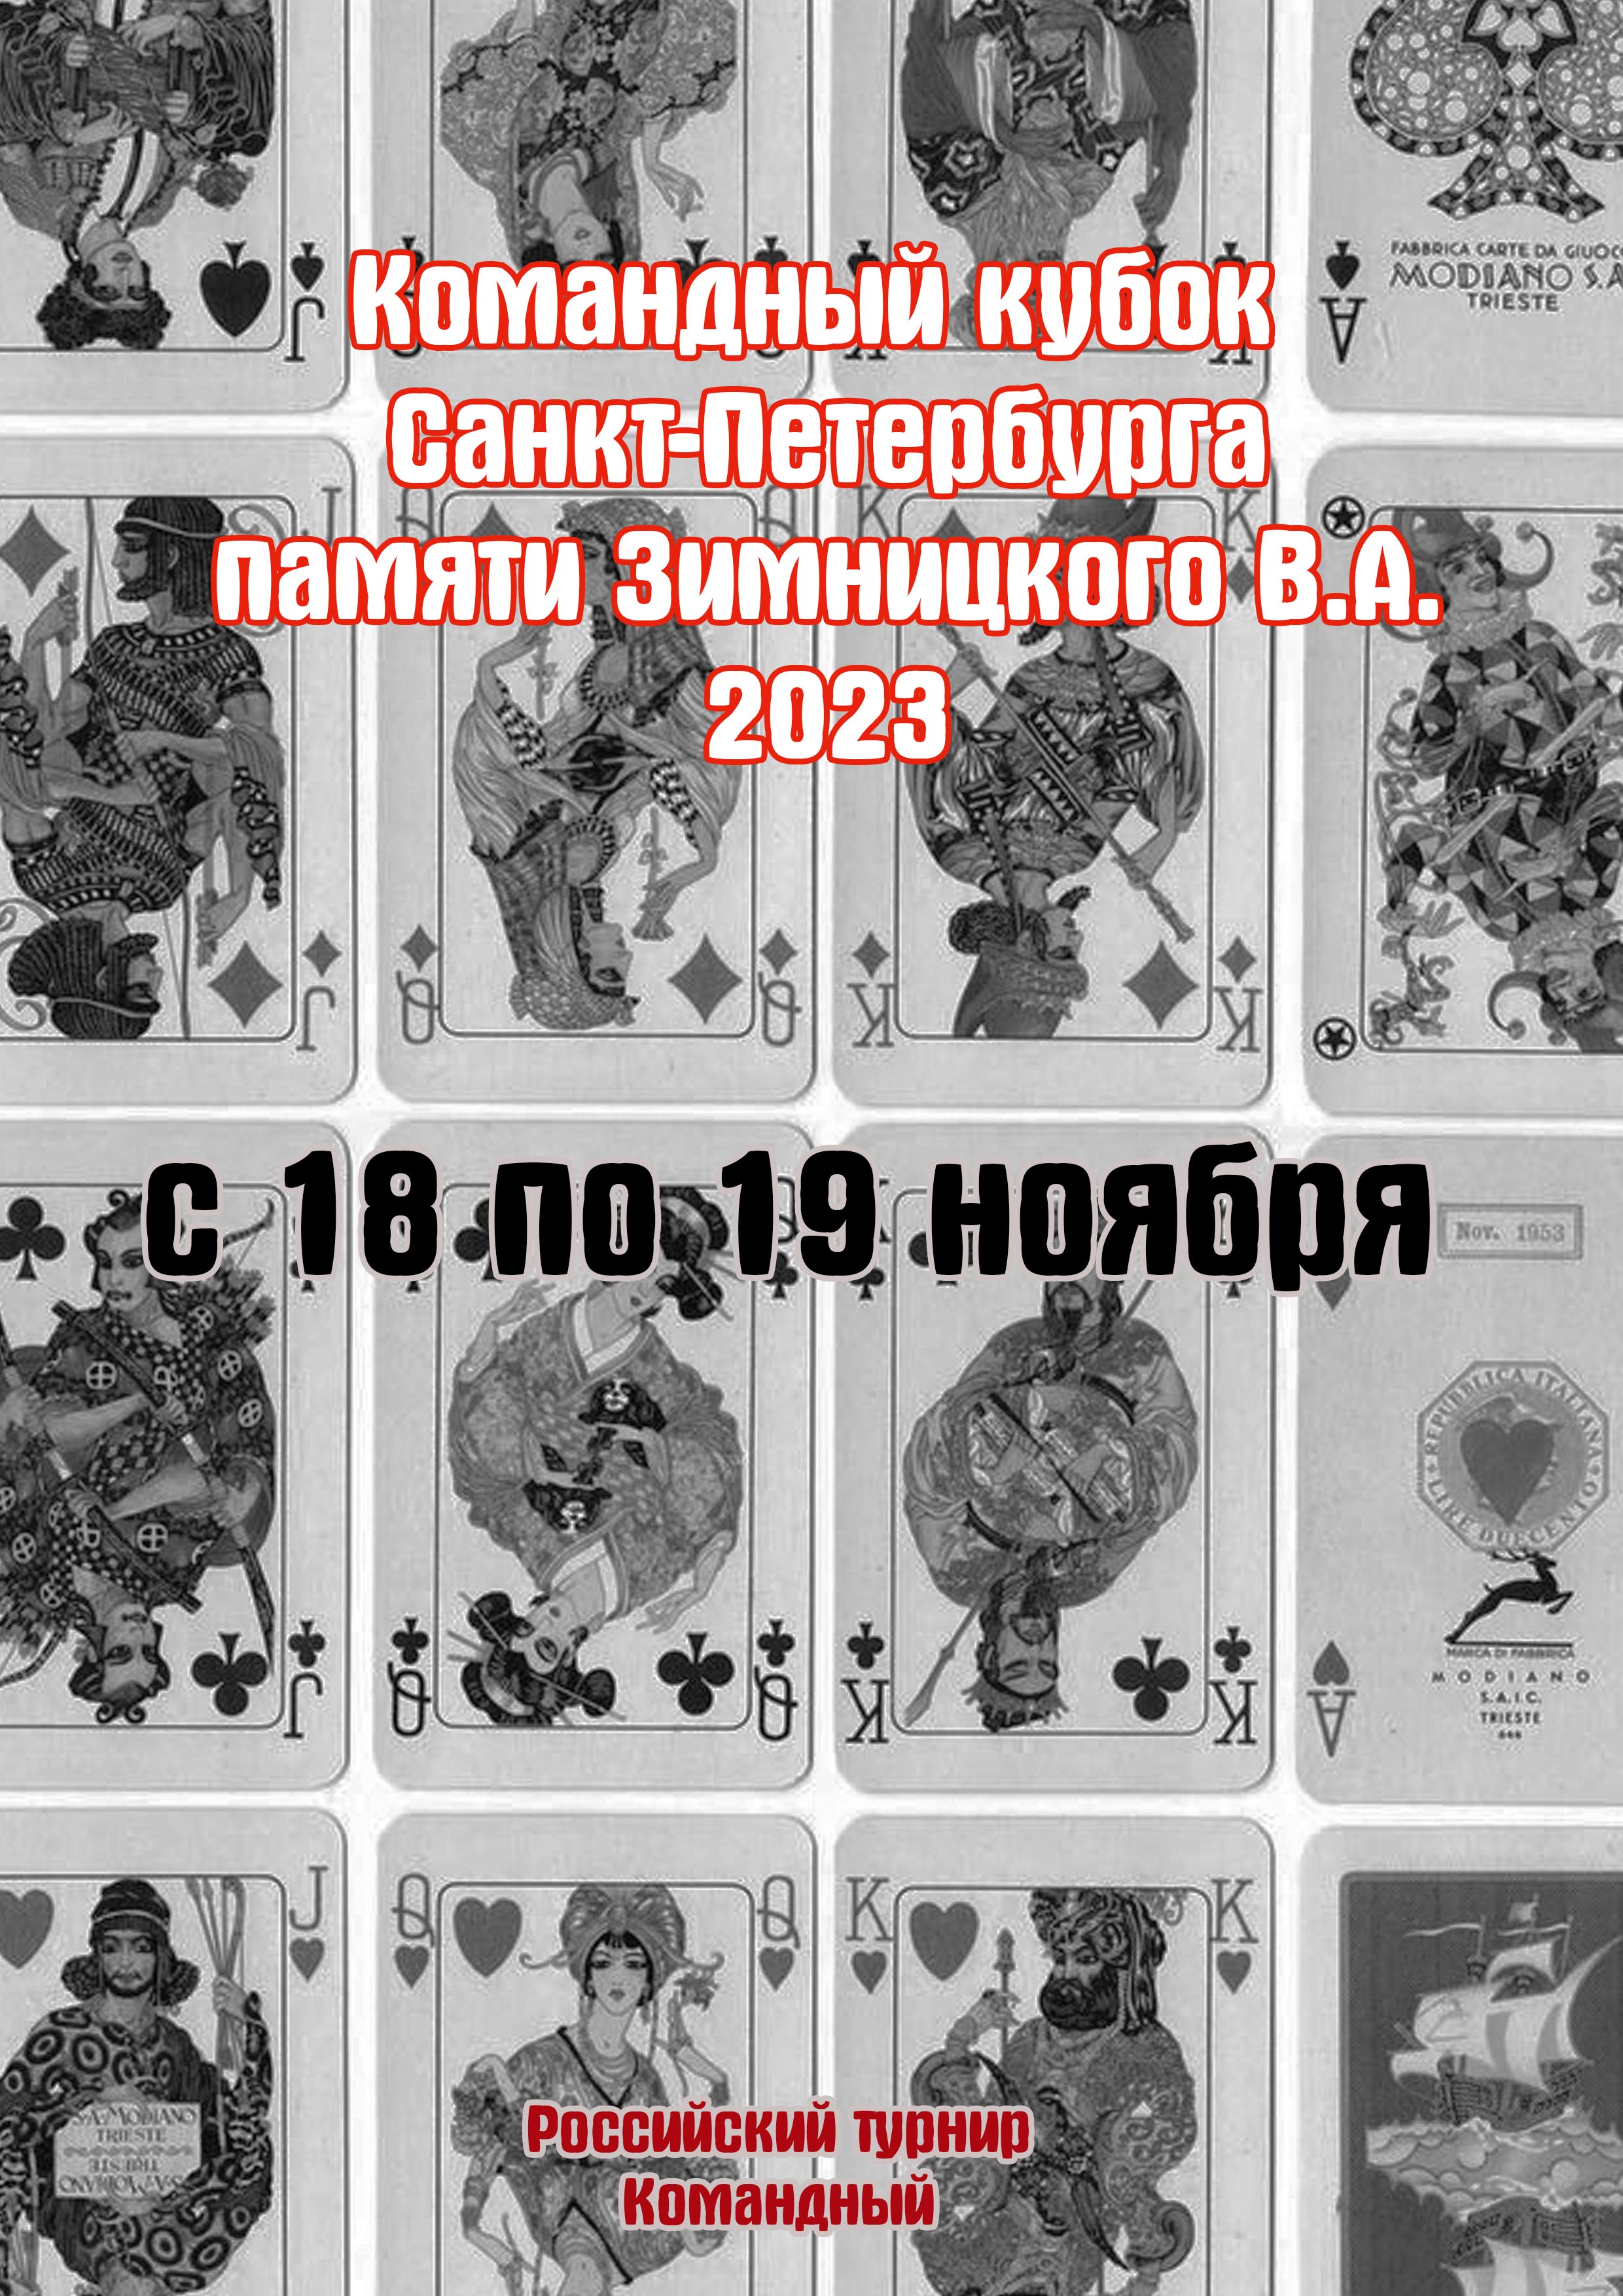 Командный кубок Санкт-Петербурга памяти Зимницкого В.А. 2023 18  நவம்பர் தான்
 2023  ஆண்டு
 